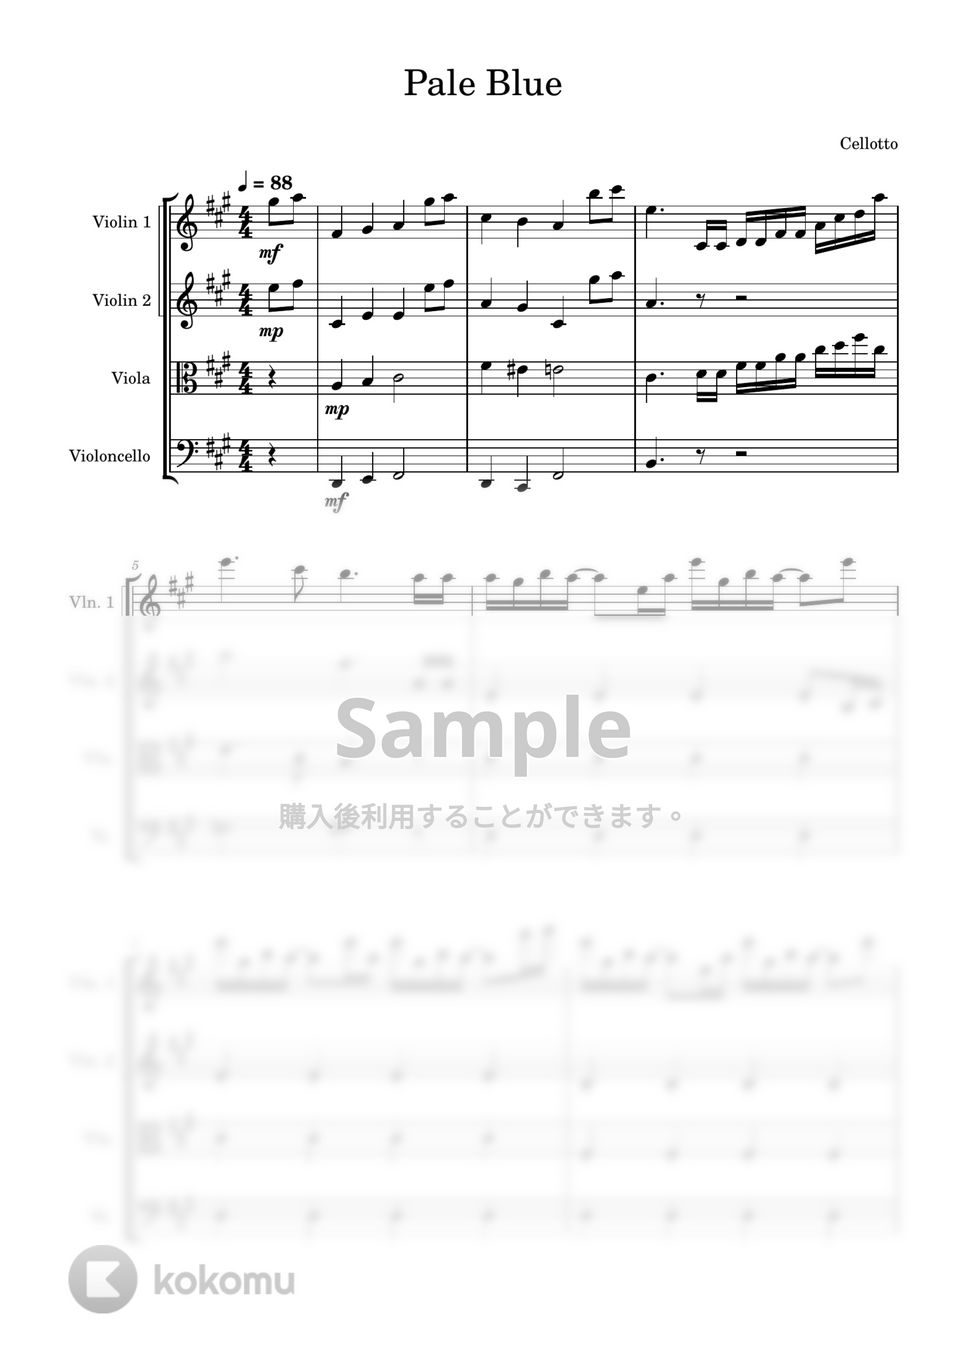 米津玄師 - Pale Blue (弦楽四重奏) by Cellotto